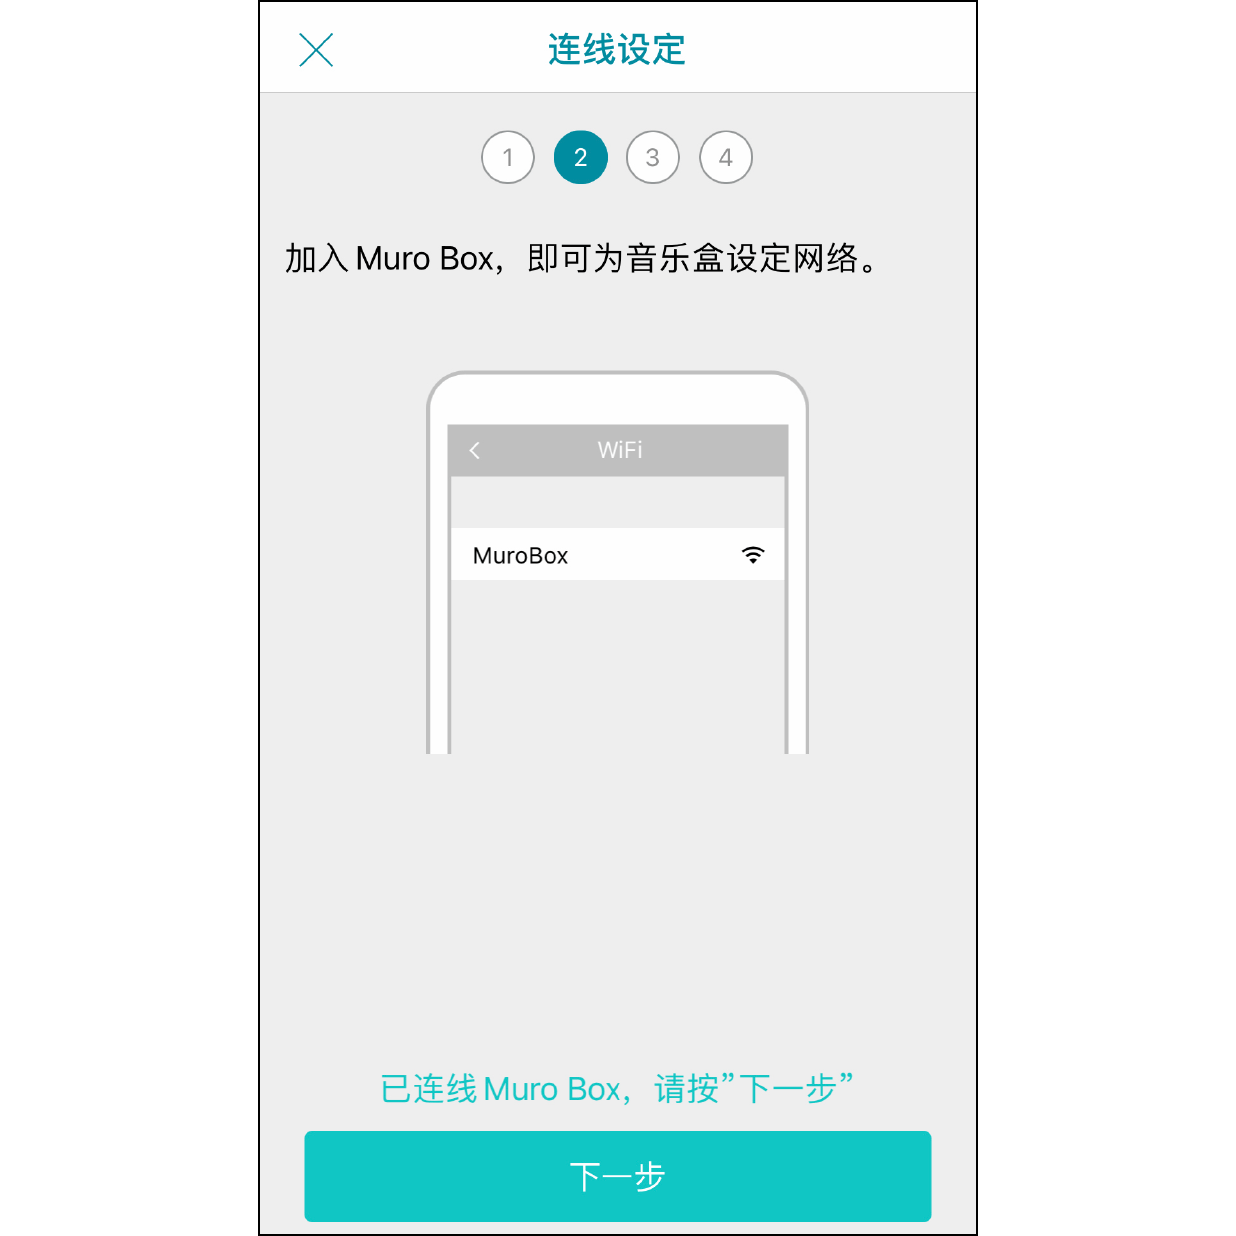 7. 成功联机 Muro Box  回到 Muro Box app 的画面，联机成功后下方会显示「已联机 Muro Box」，接着按「下一步」按钮。